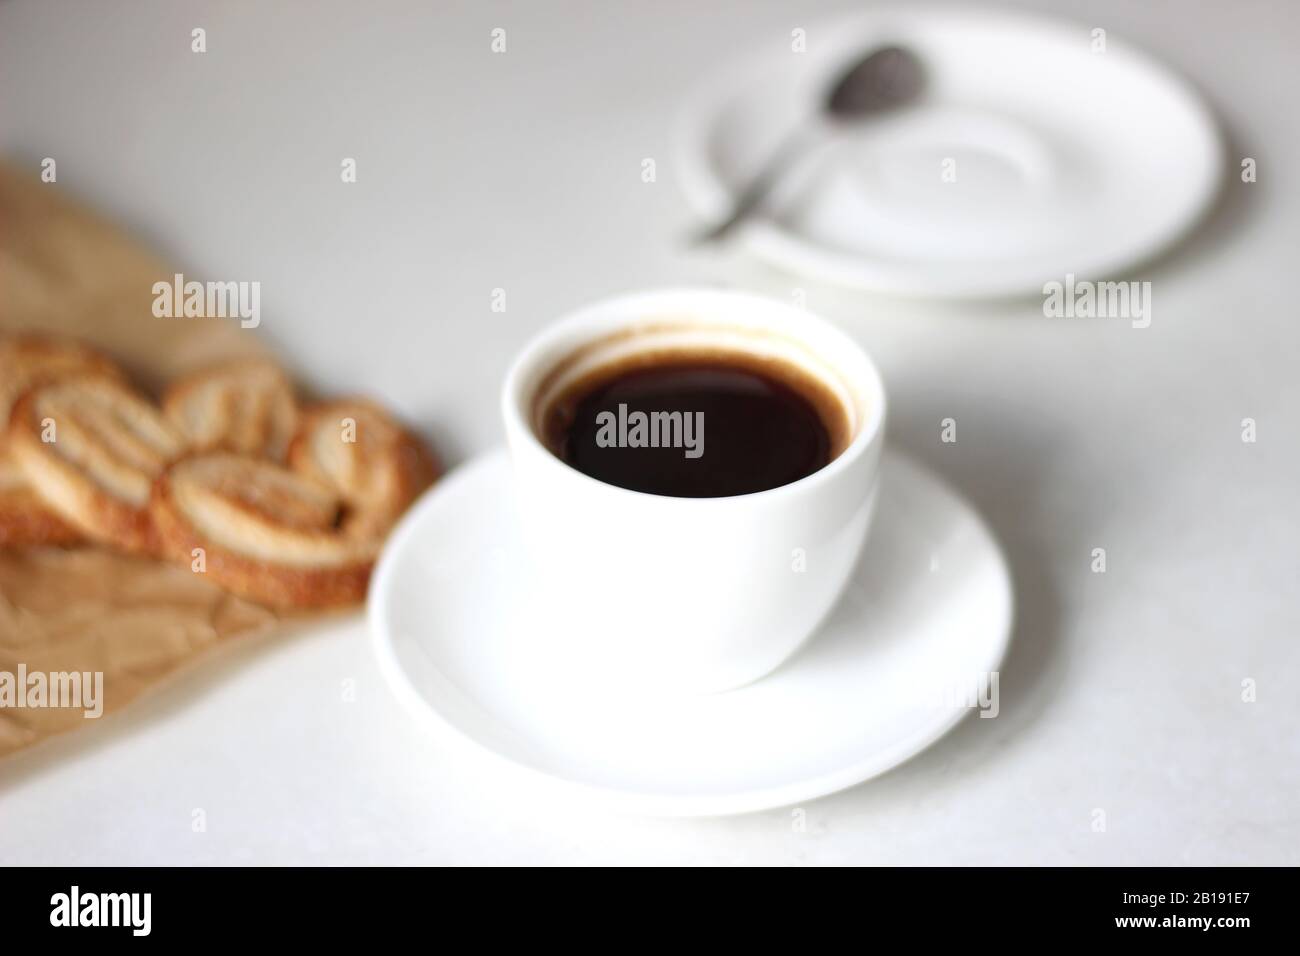 Morgenkaffee. Tasse schwarzen Kaffee mit Palmiers Plätzchen Dessert. Stockfoto